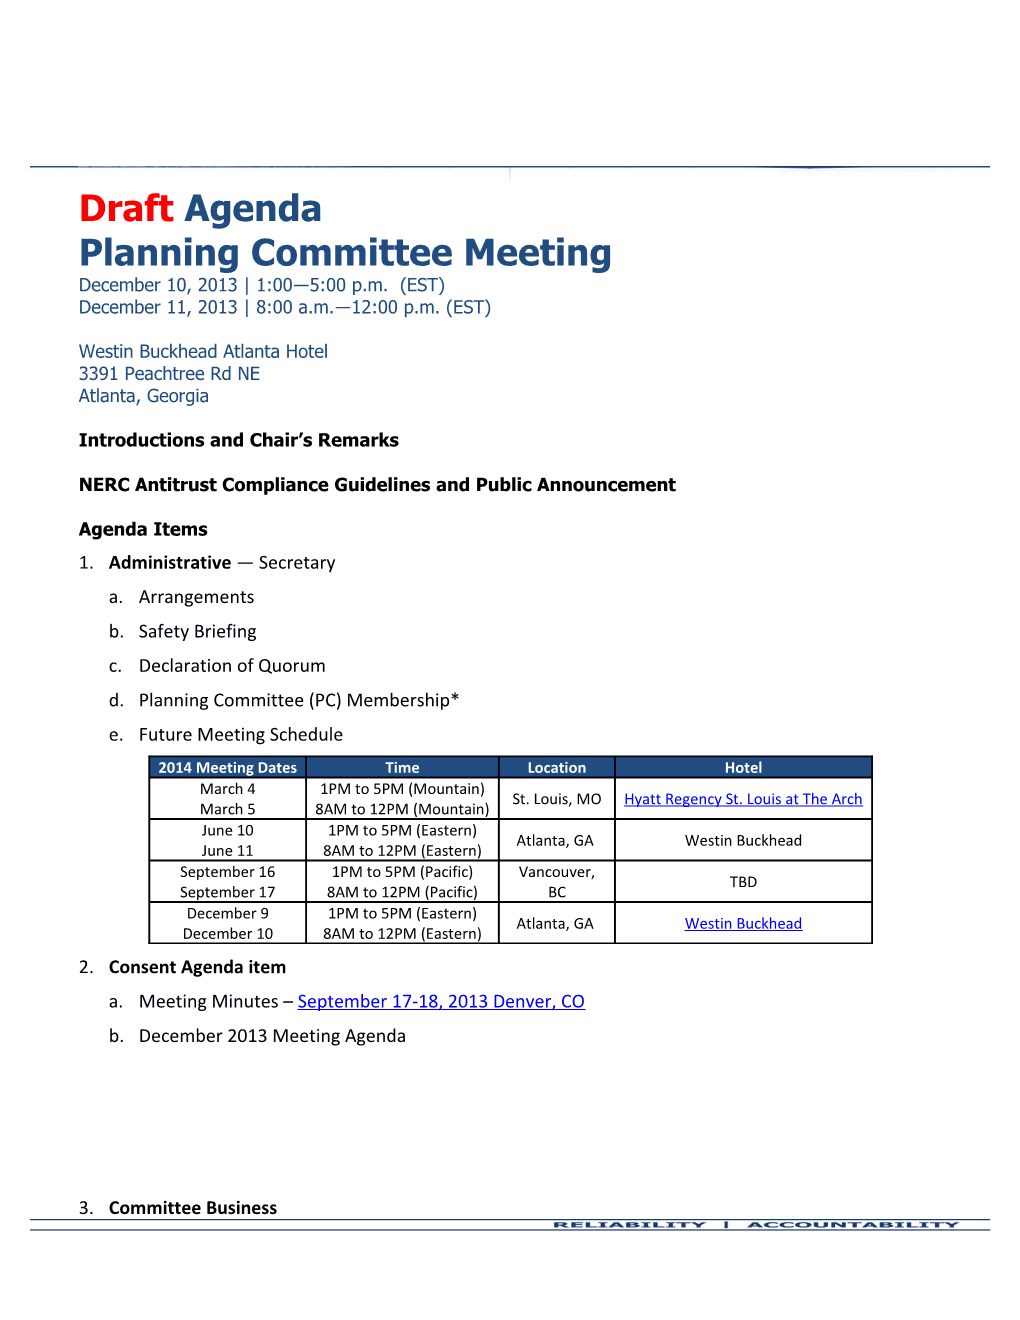 DRAFT Planning Committee Meeting Agenda - December 10-11, 2013